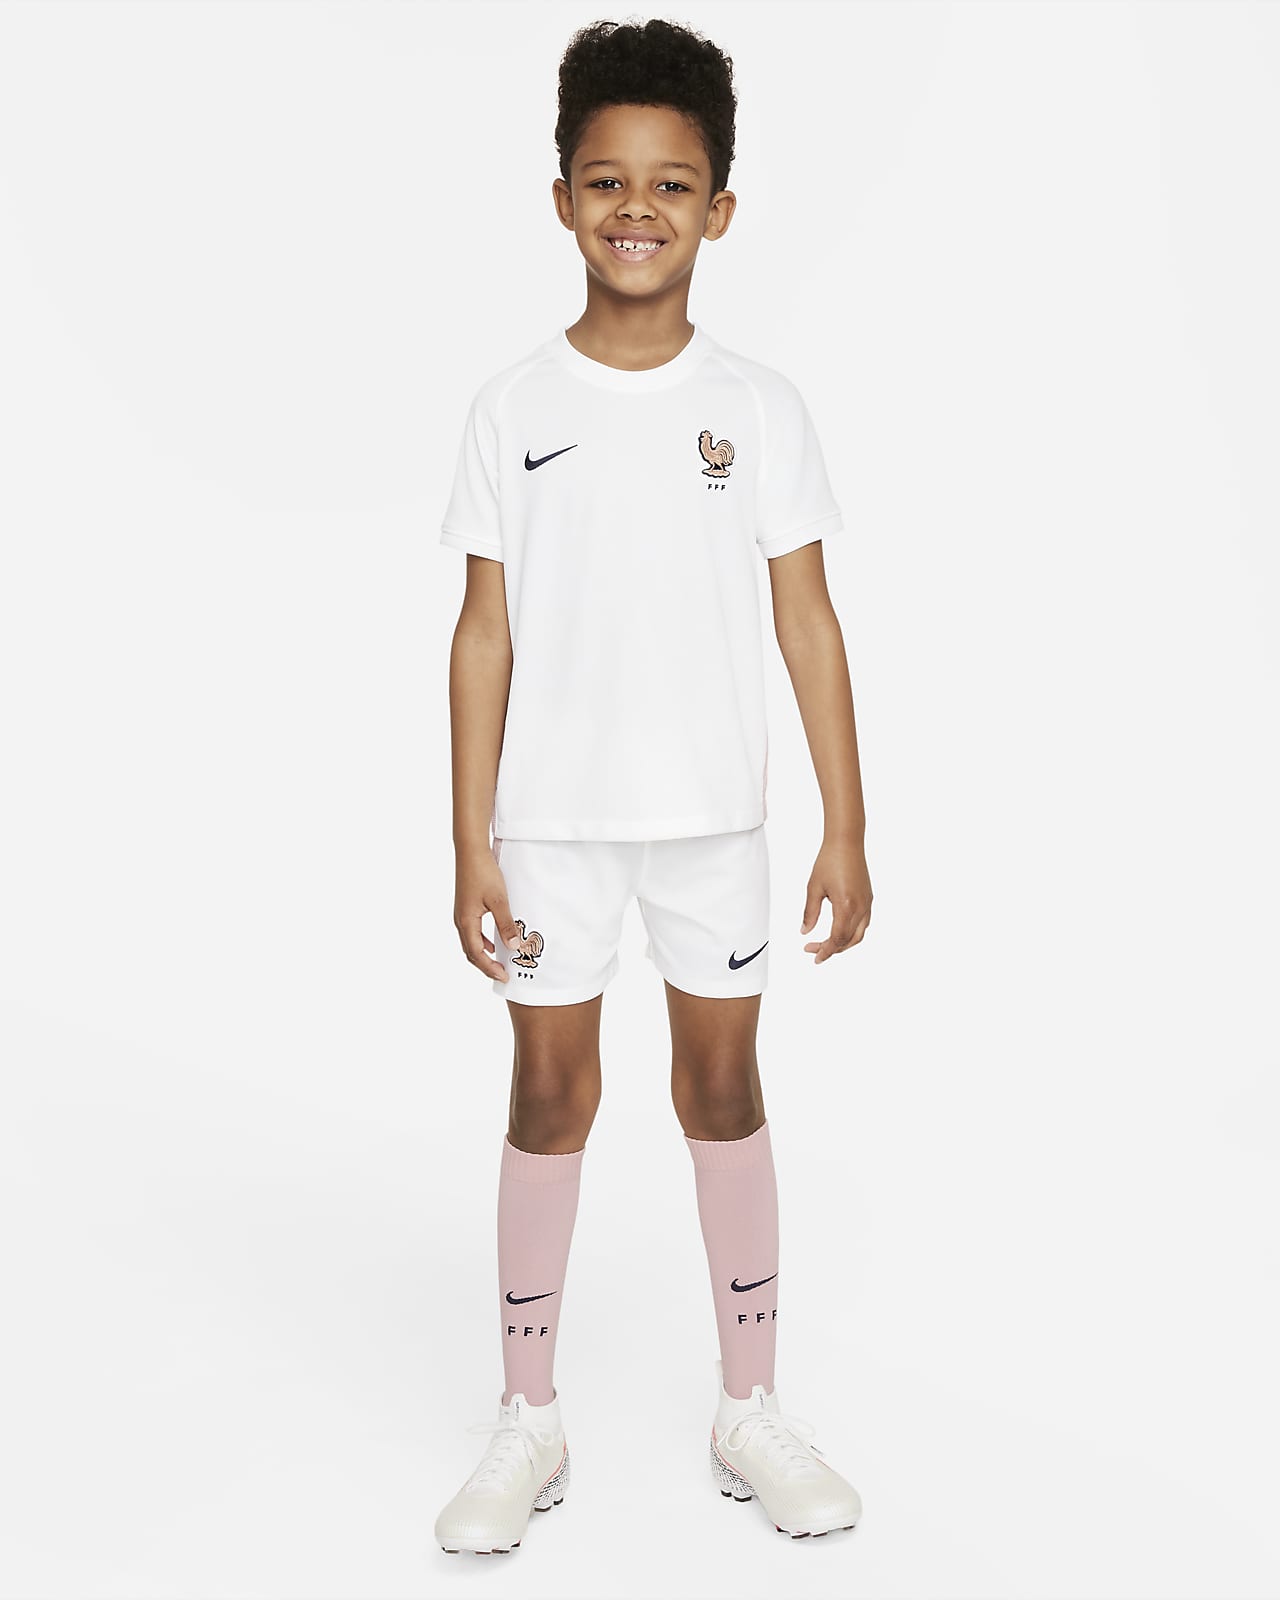 Fotbollsställ FFF 2022 (bortaställ) Nike för barn